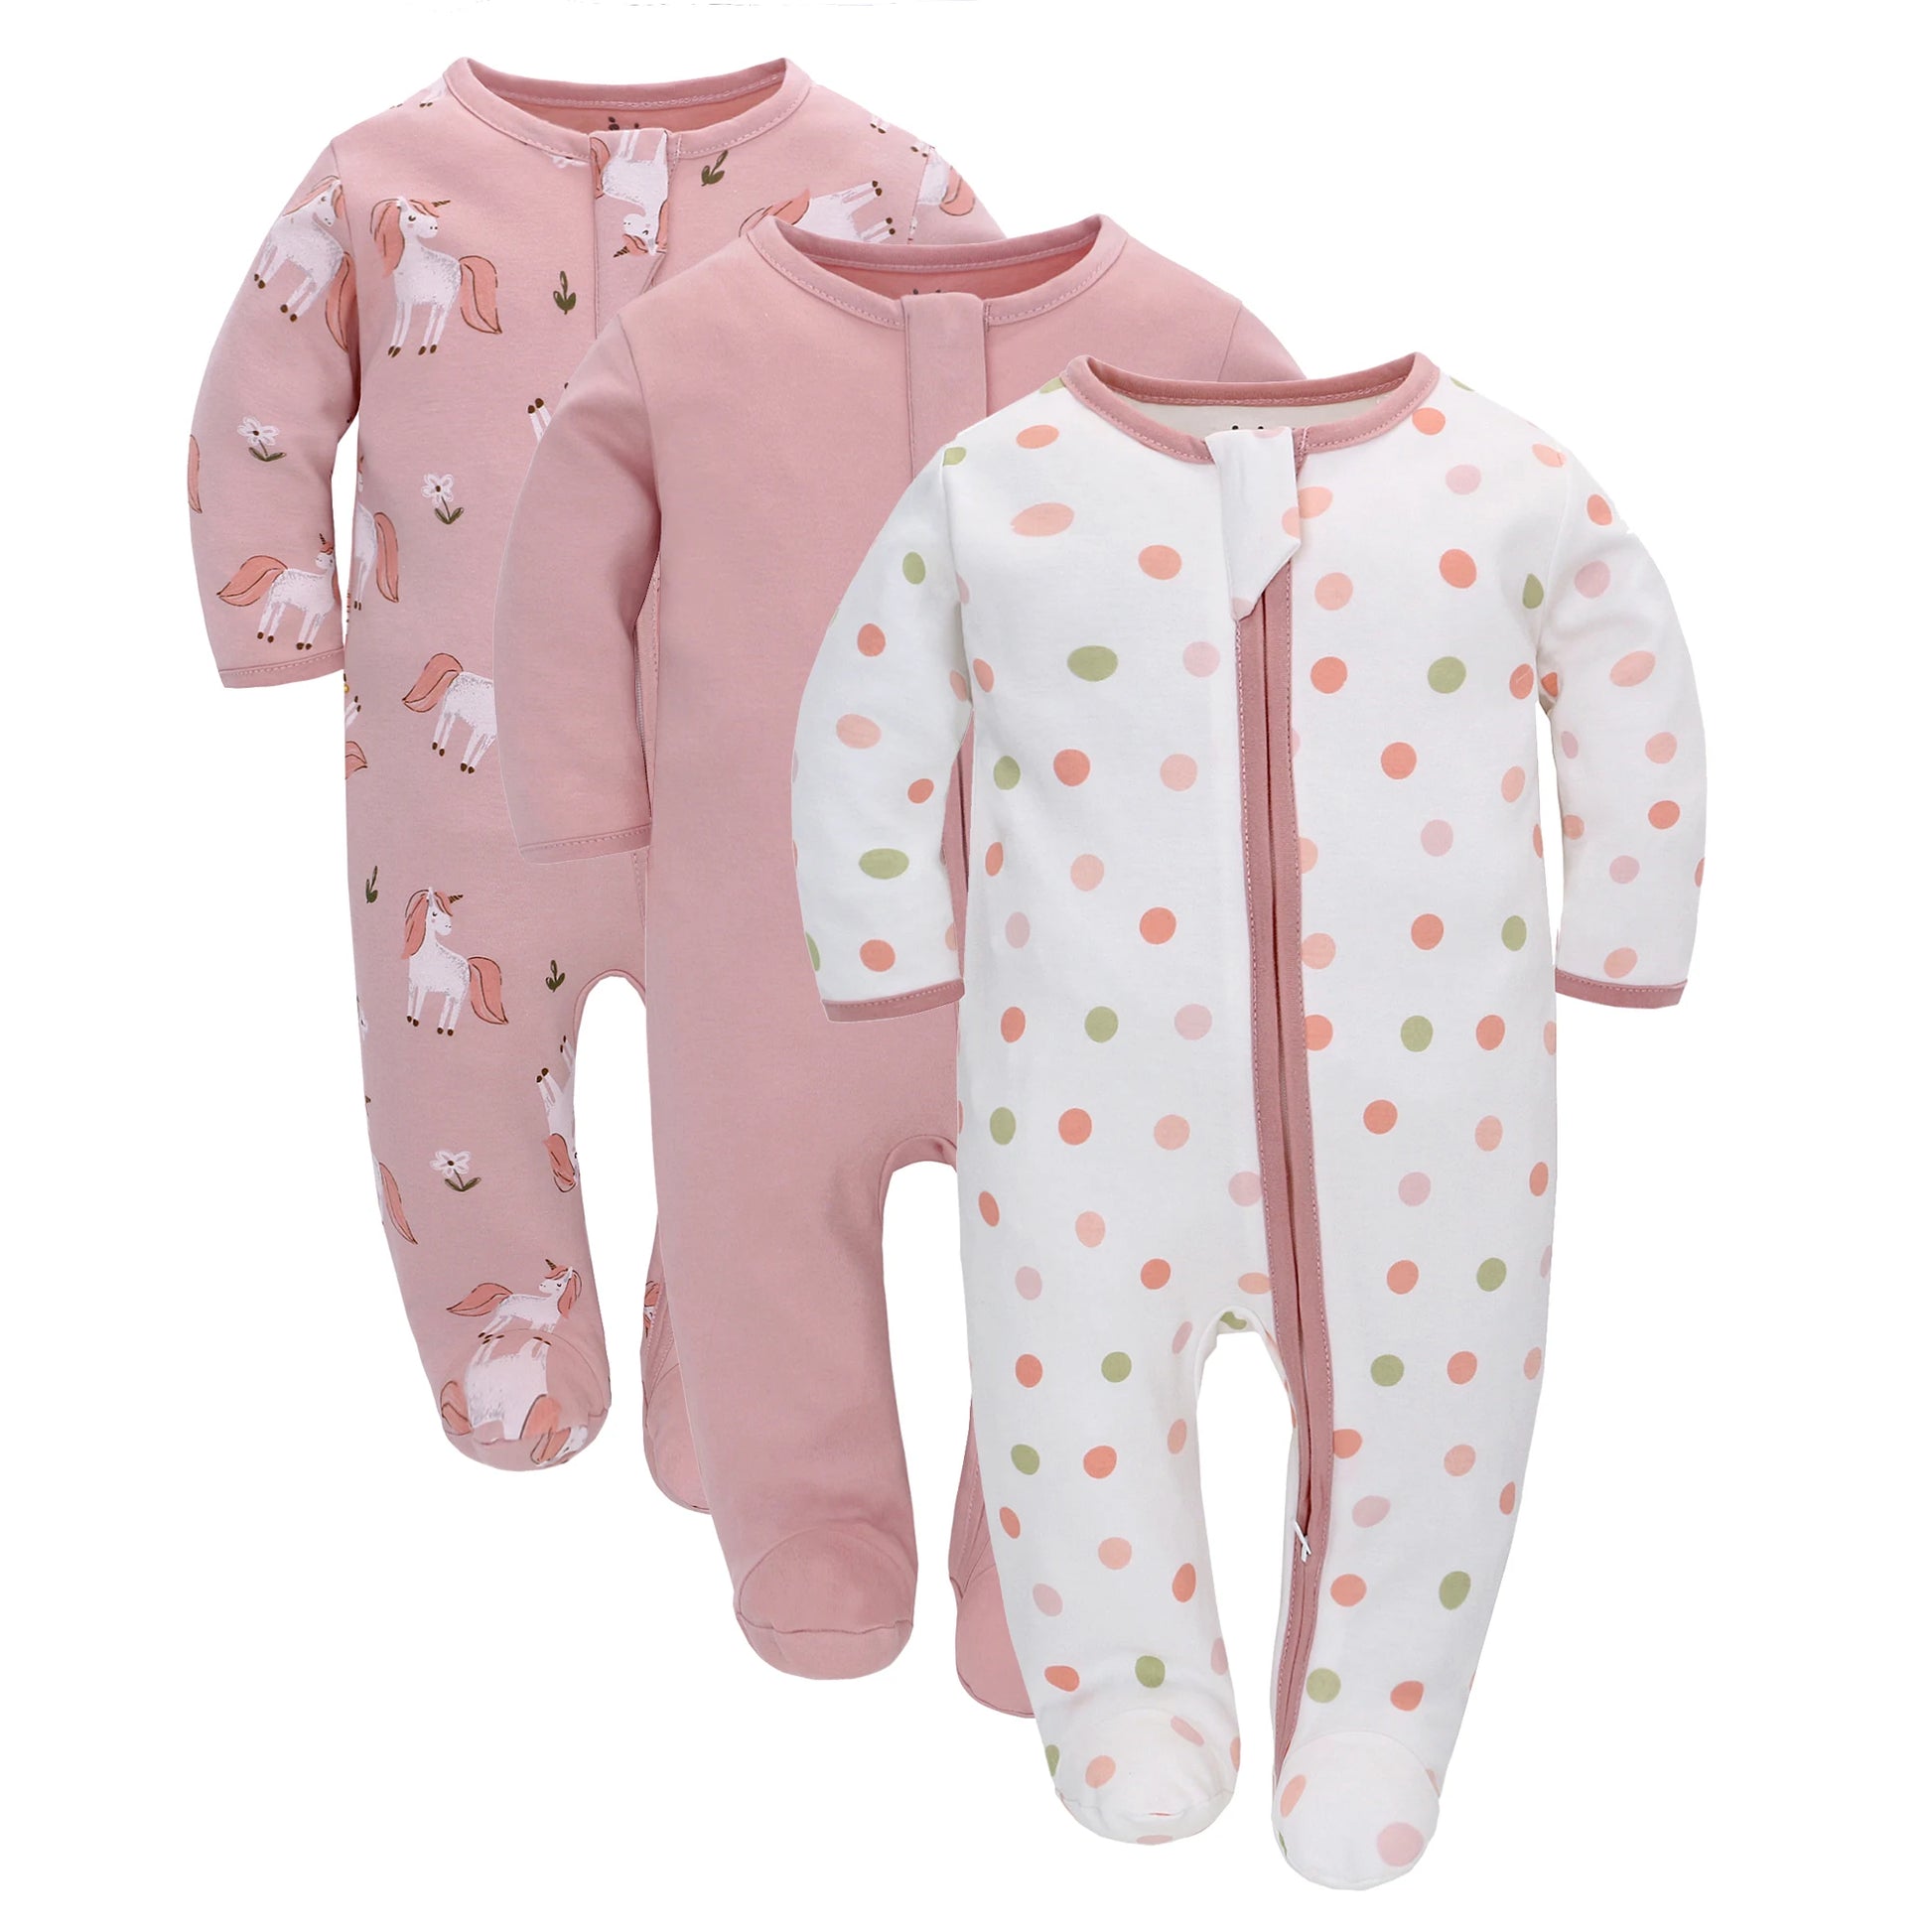 Unisex Long Sleeve Pajama Romper For Toddlers Pink by Baby Minaj Cruz